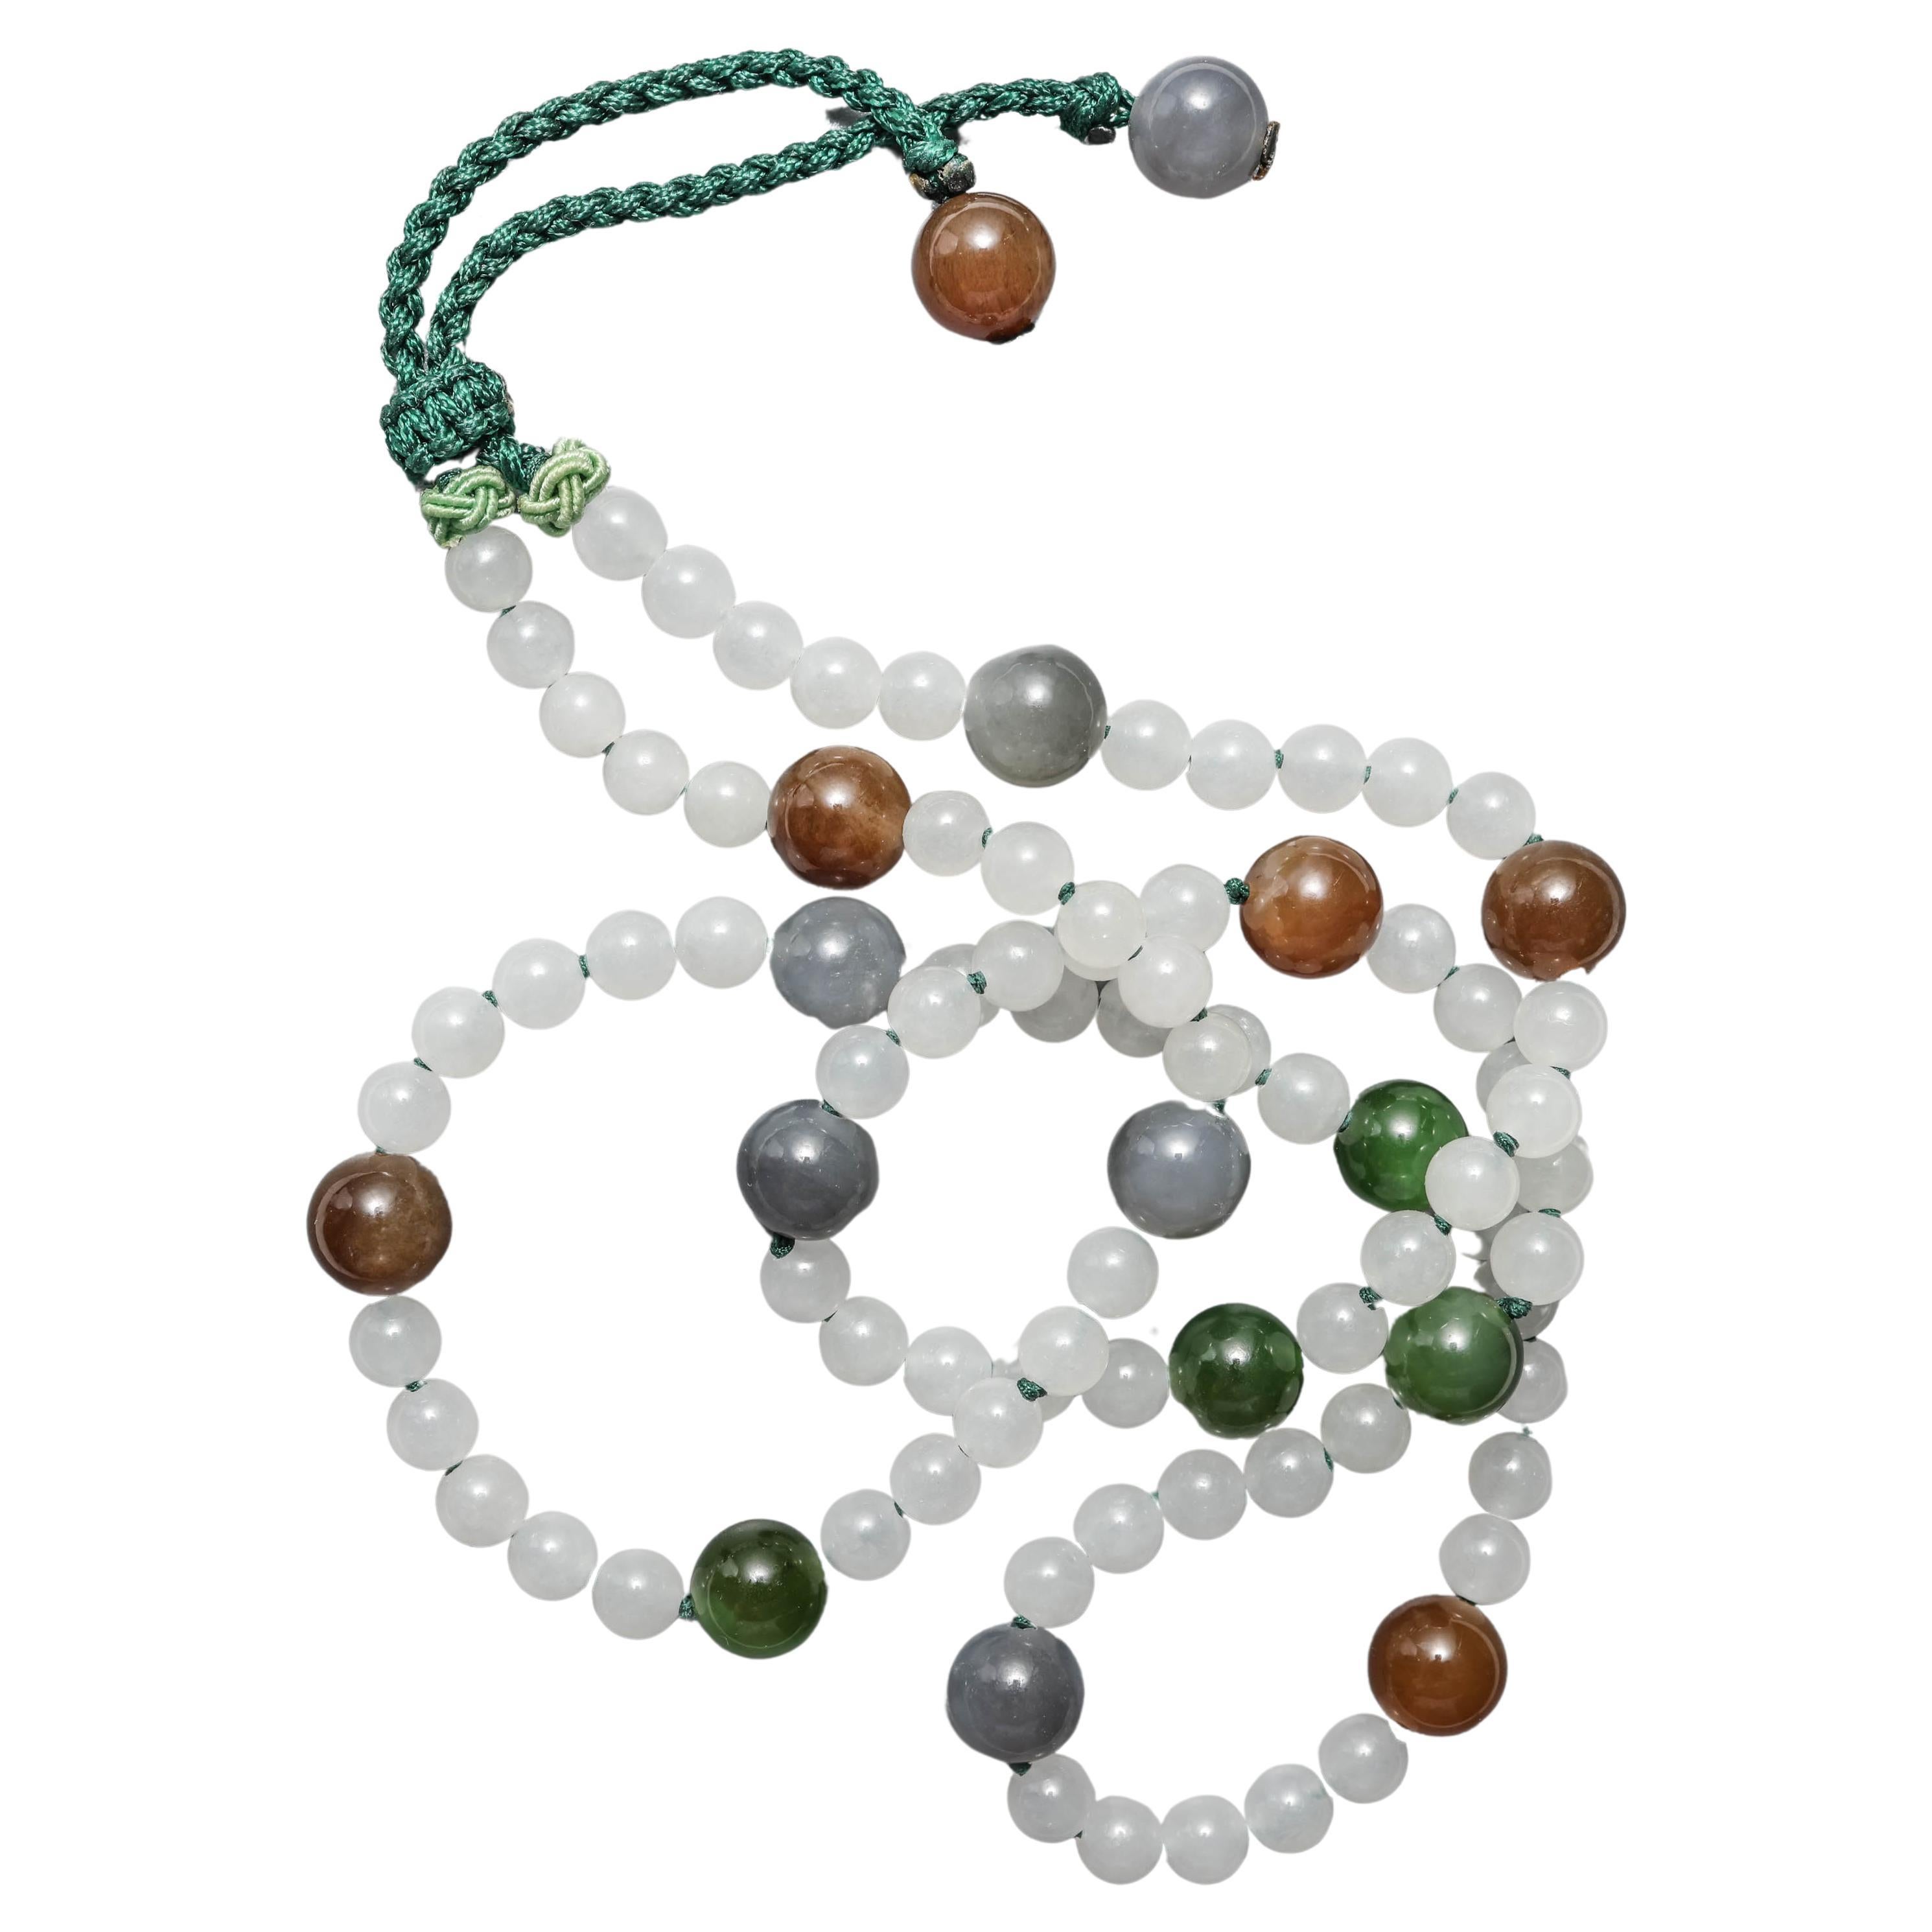 Halskette aus Jade, seltene Nephritfarben, hohe Transluzenz, zertifiziert und unbehandelt